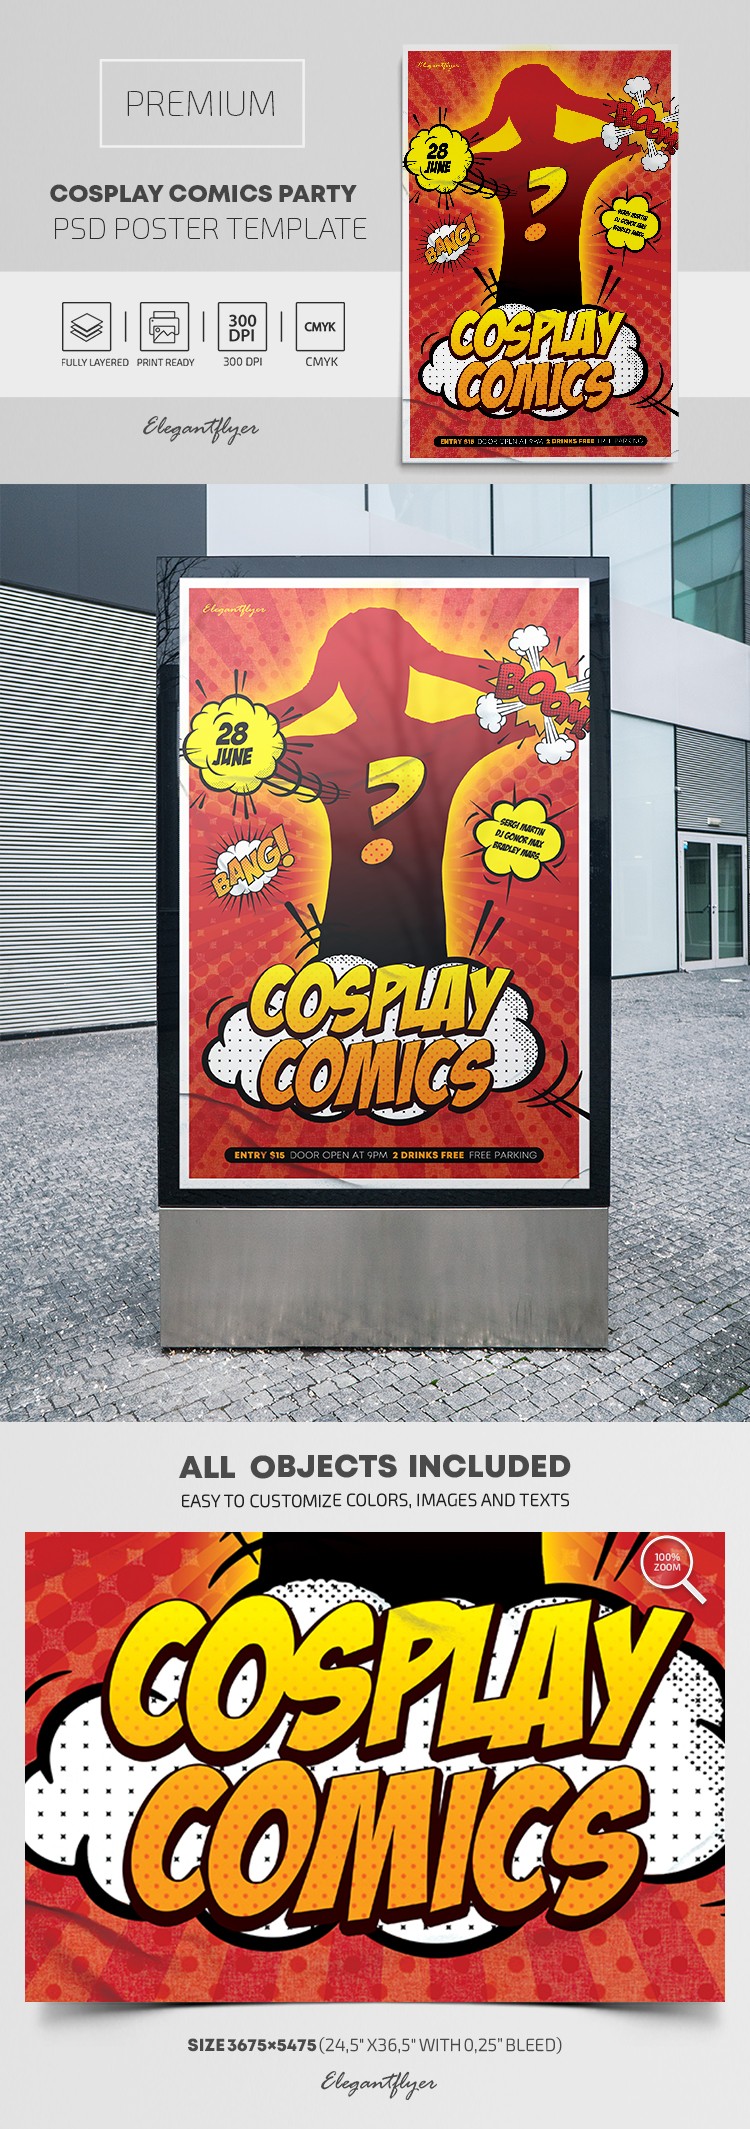 Affiche de la soirée Cosplay Comics by ElegantFlyer